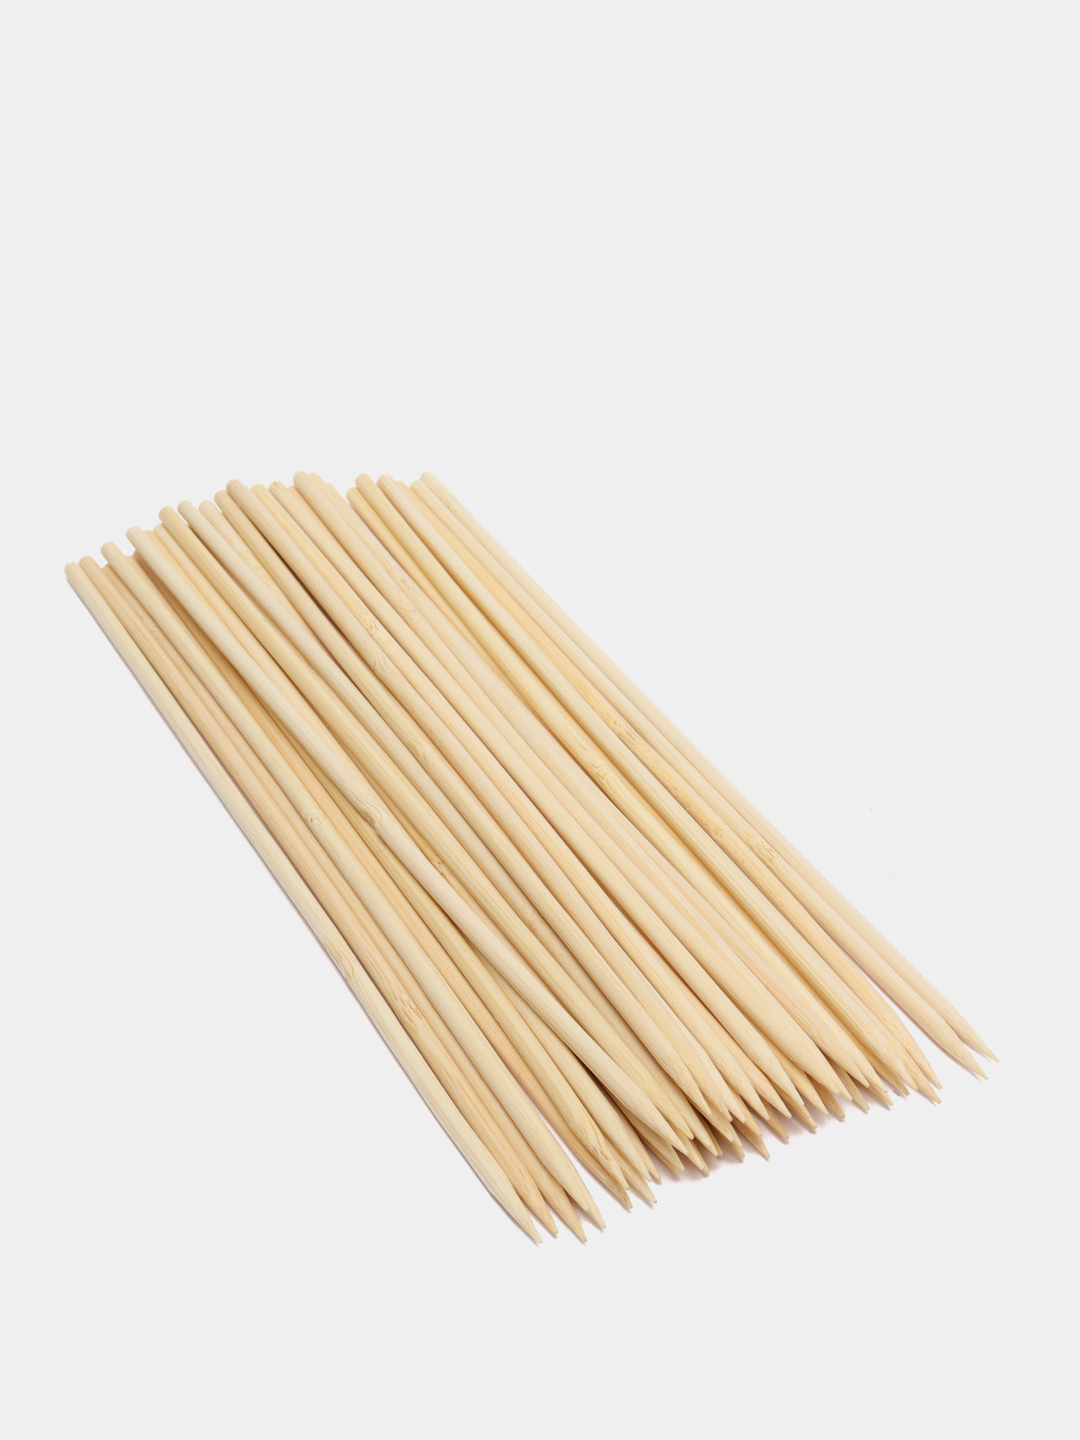 Шпажки-шампуры бамбуковые 25/30 см, толщина 4,5 мм за 99 ₽  в .